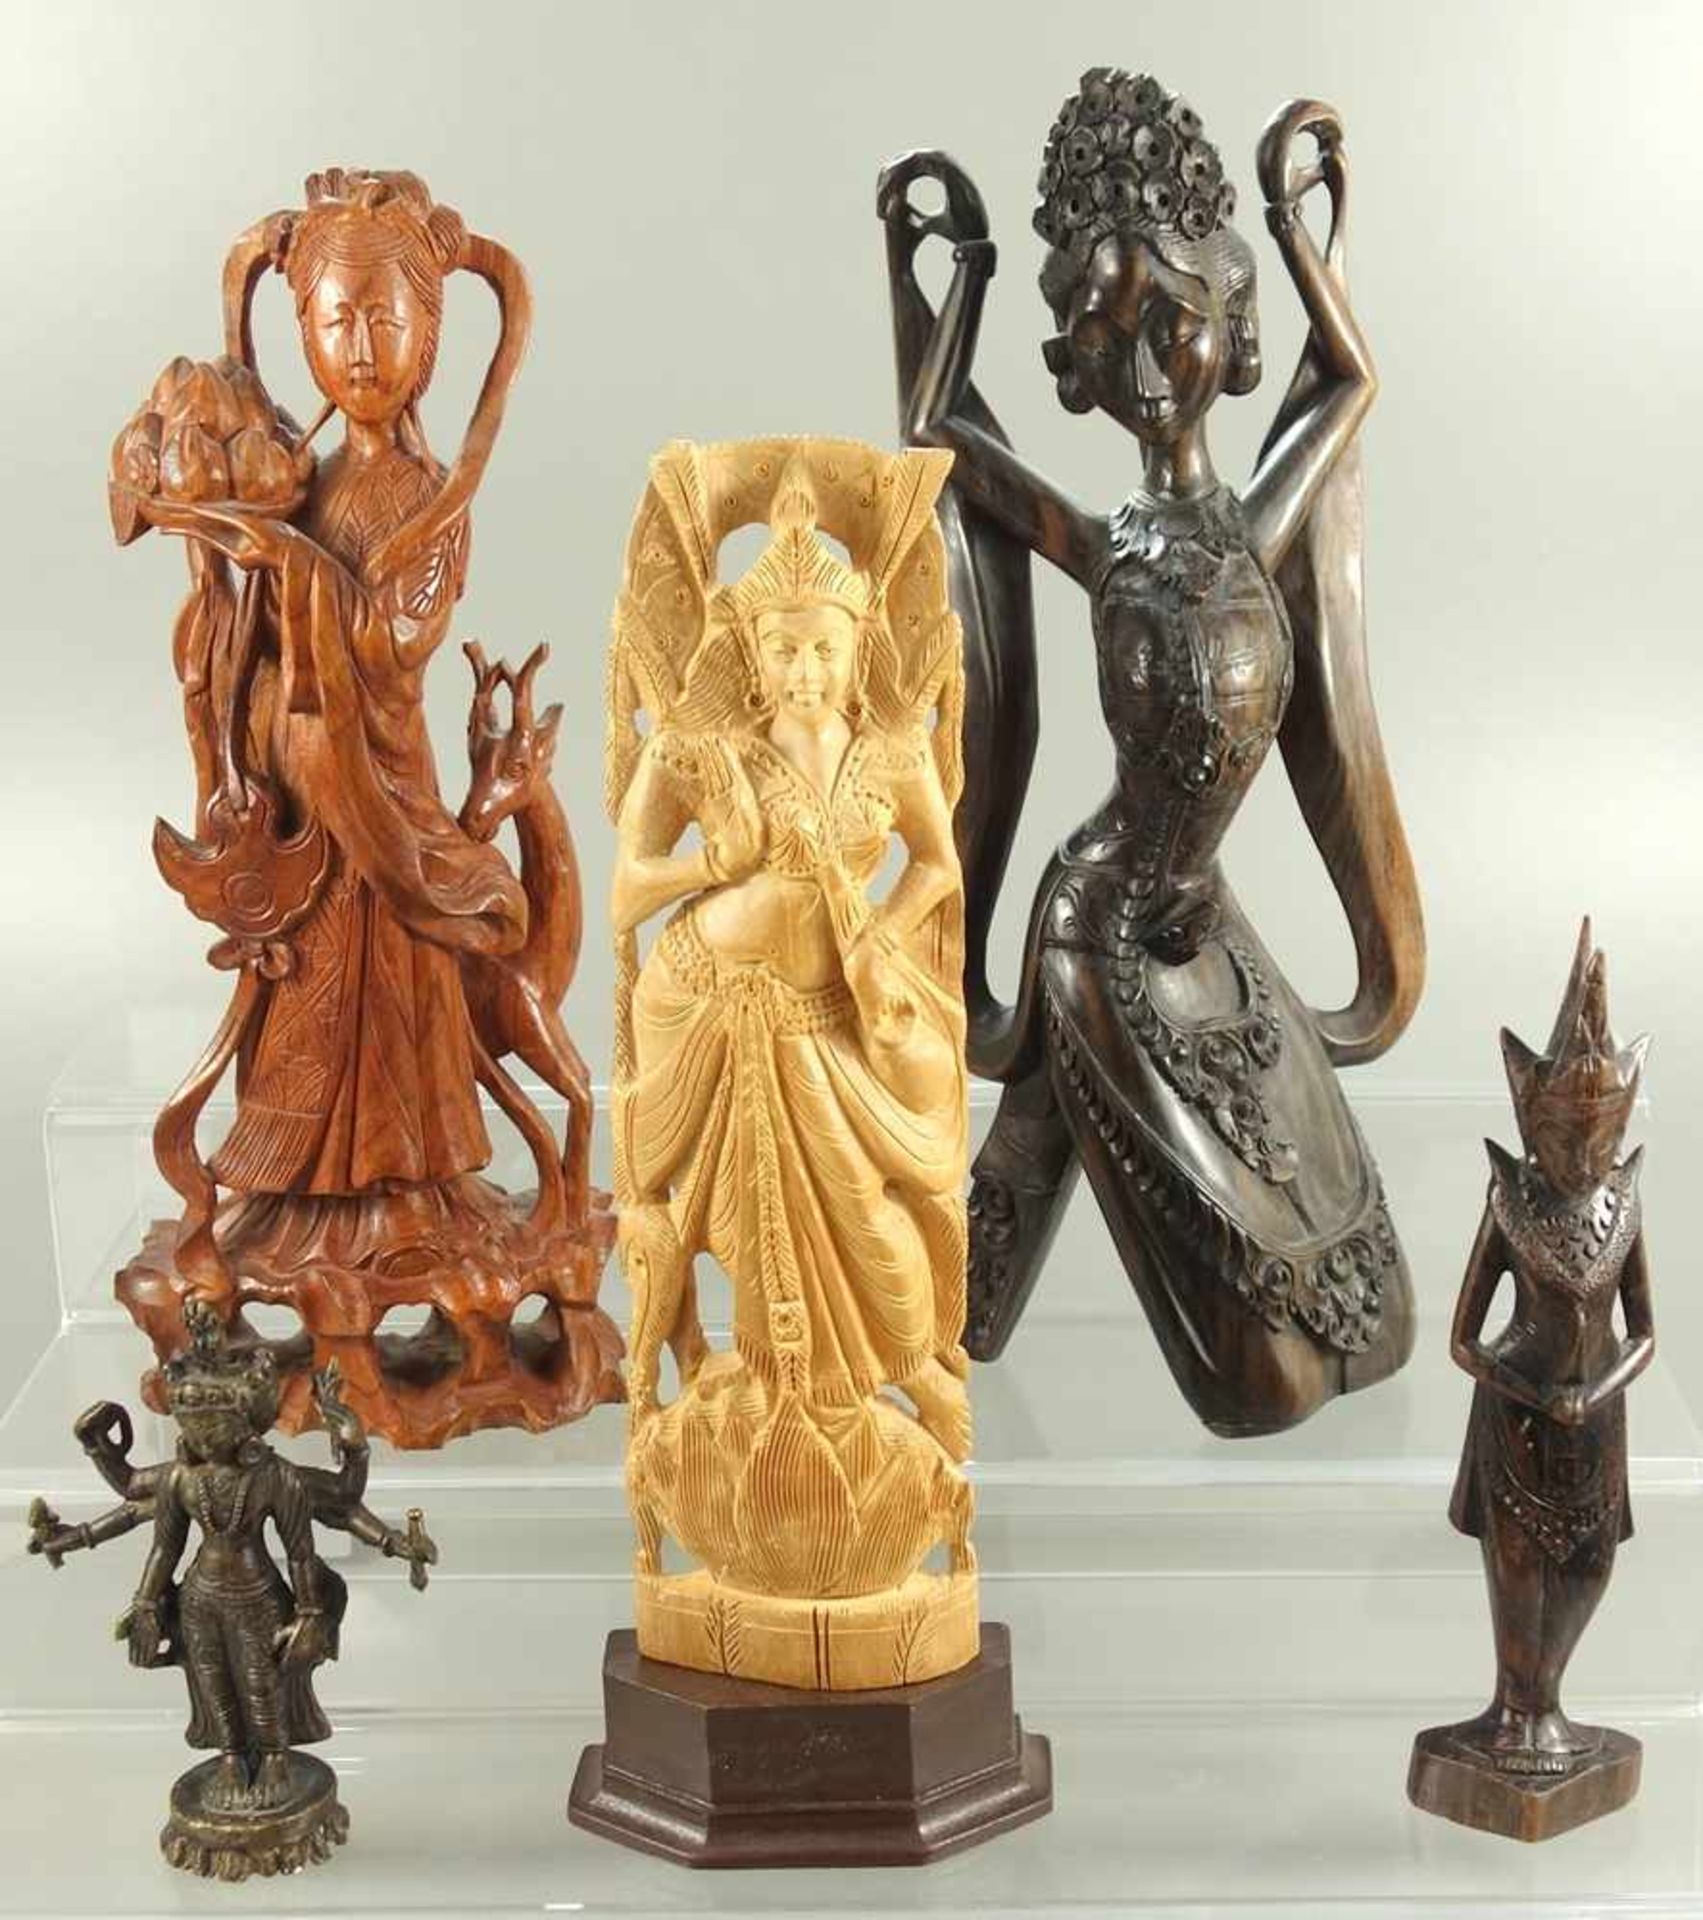 5 überwiegend weibliche Gottheiten, Südostasien, 20. Jh., verschiedene geschnitzte Edelhölzer,